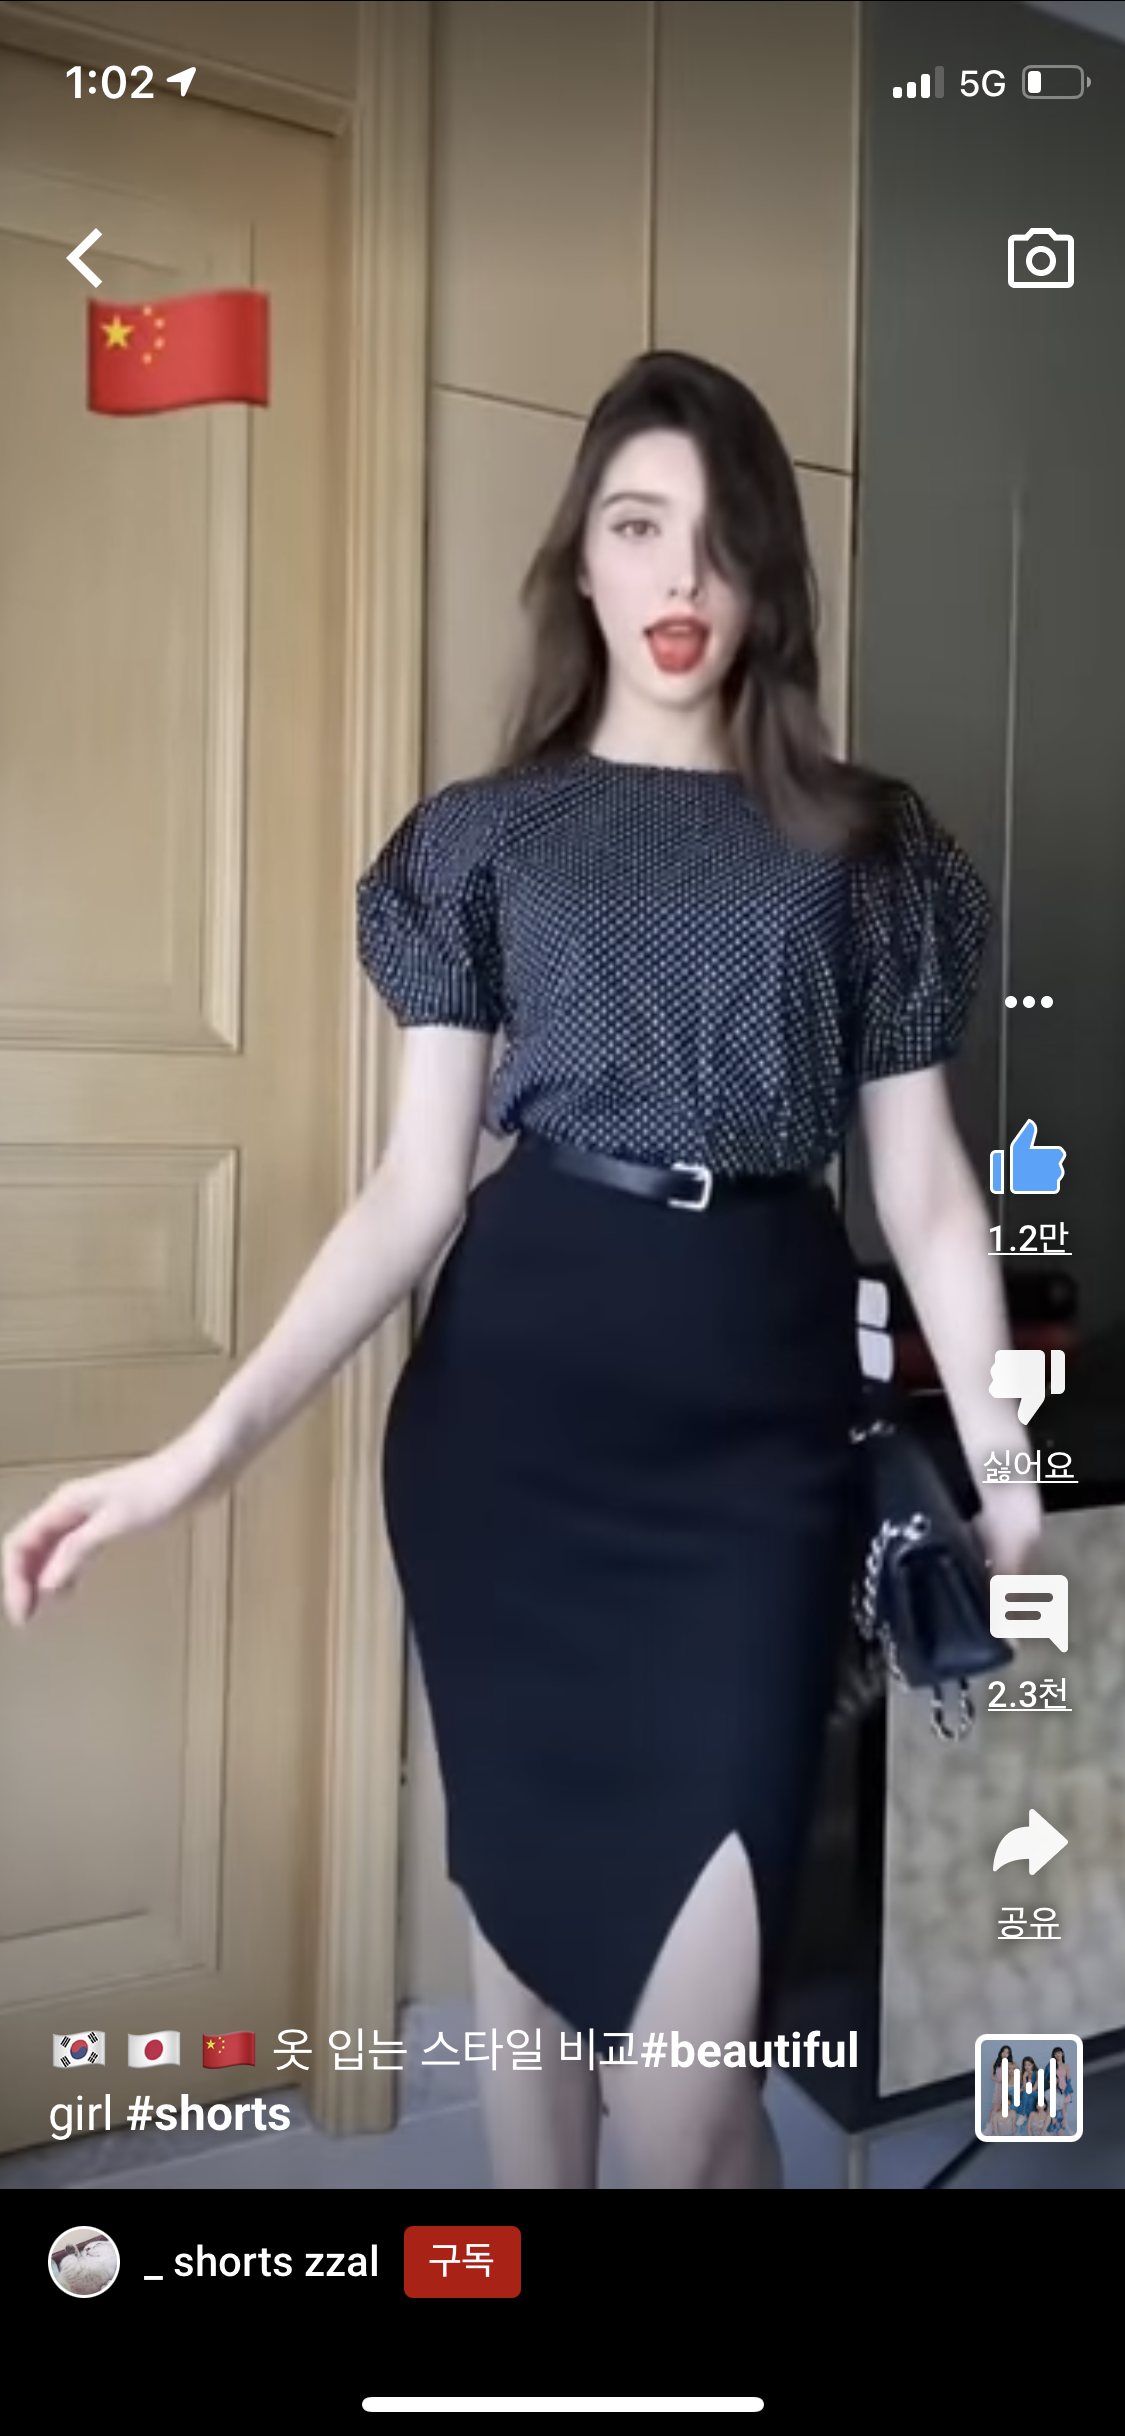 한중일 여자옷 스타일비교 영상 댓글